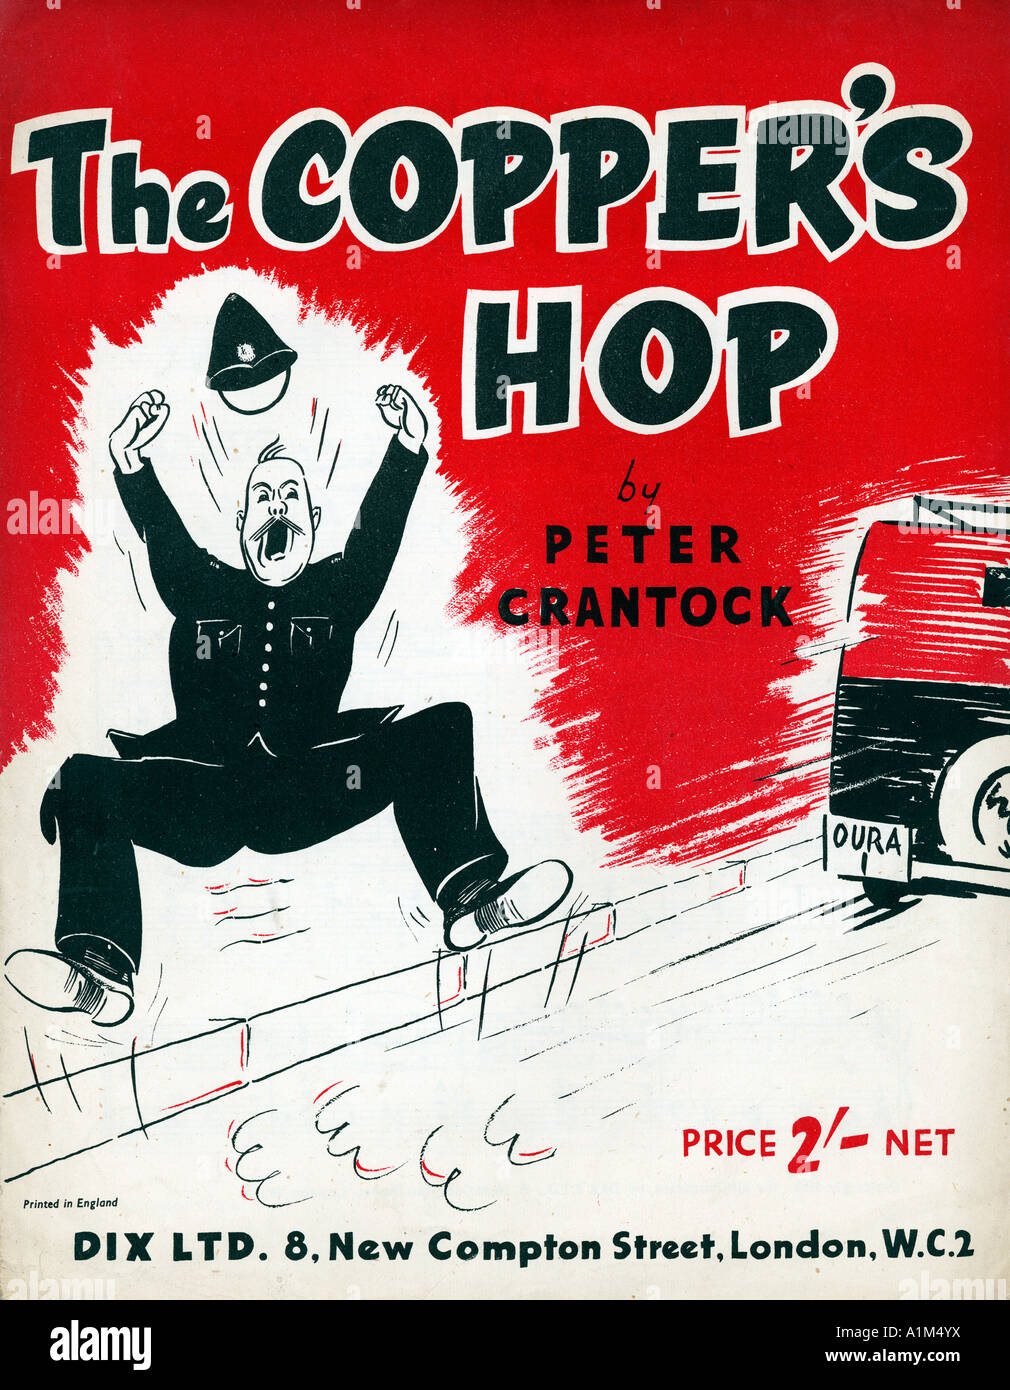 Les Coppers Hop 1940 feuille de musique pour couvrir une chanson humoristique sur les tribulations d'un policier en devoir de trafic Banque D'Images